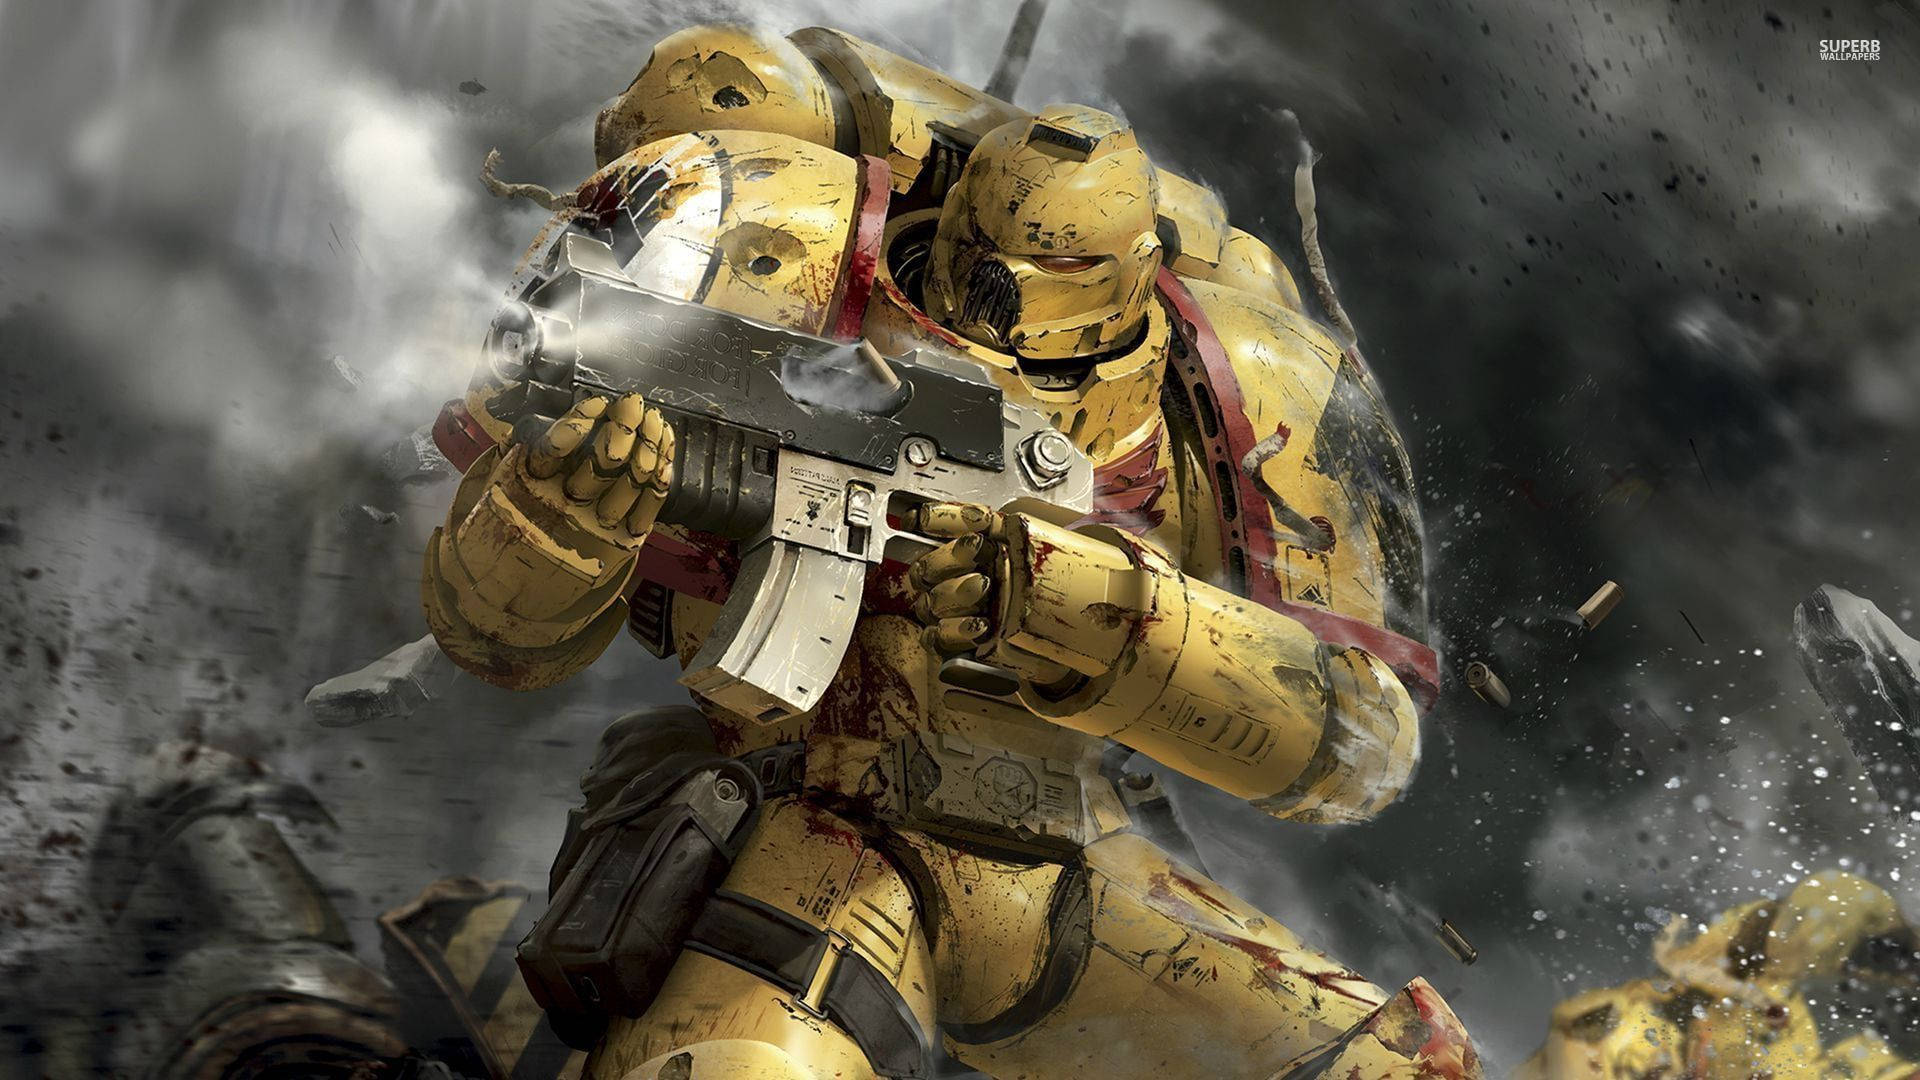 Gold Space Marine Warhammer